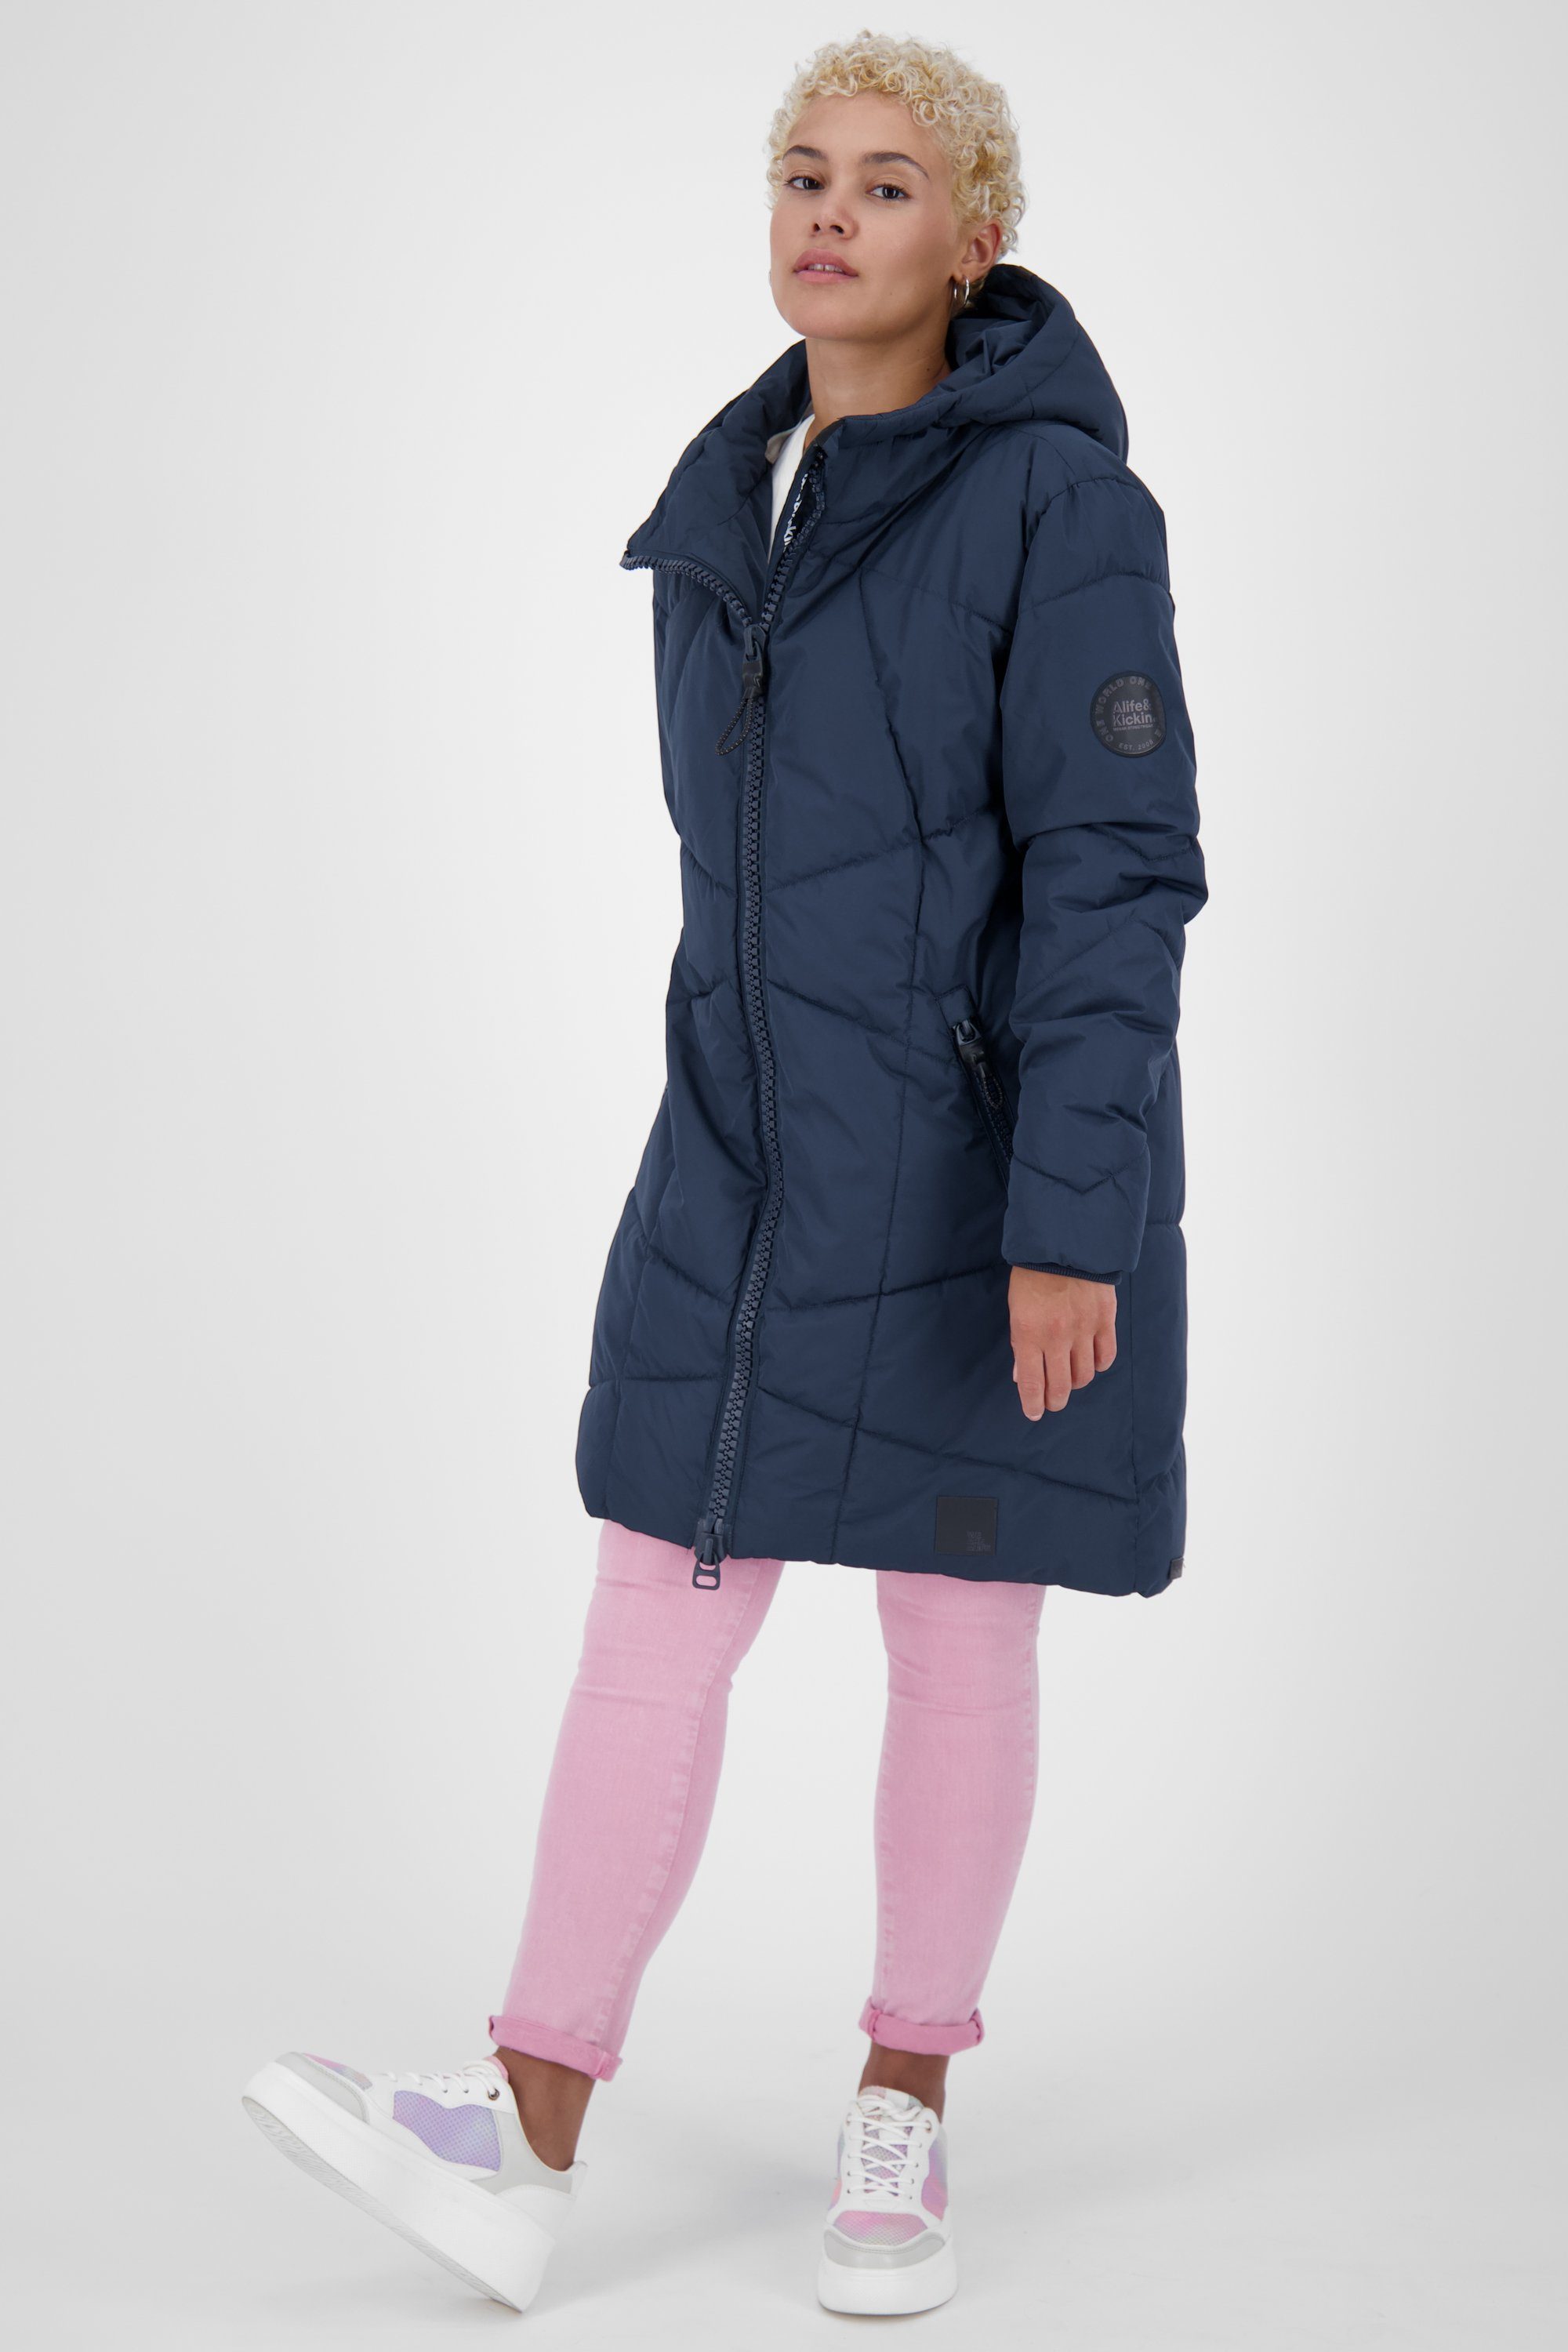 Alife & gefütterte Kickin Damen Coat Jacke Winterjacke, A KasiaAK marine Winterjacke